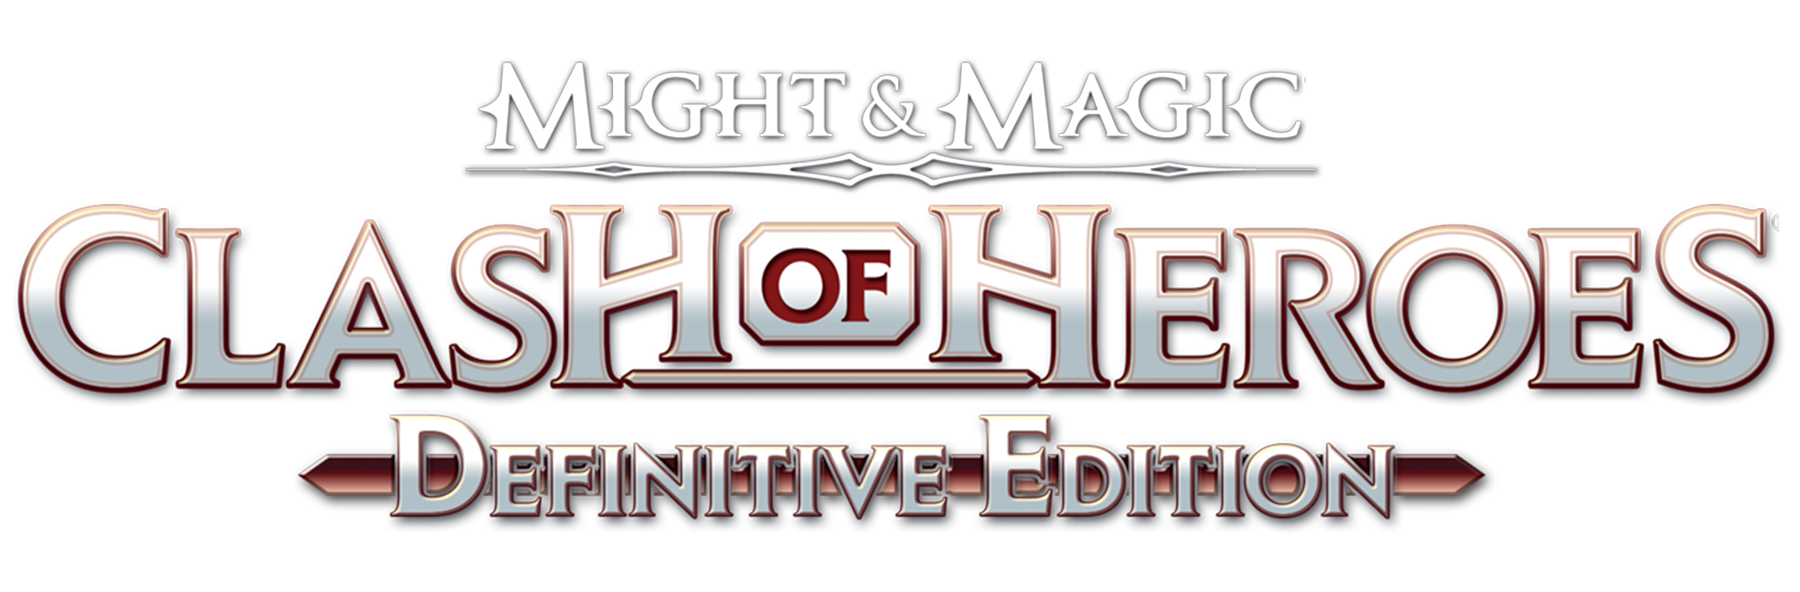 Might & Magic: Clash of Heroes será o próximo jogo gratuito do